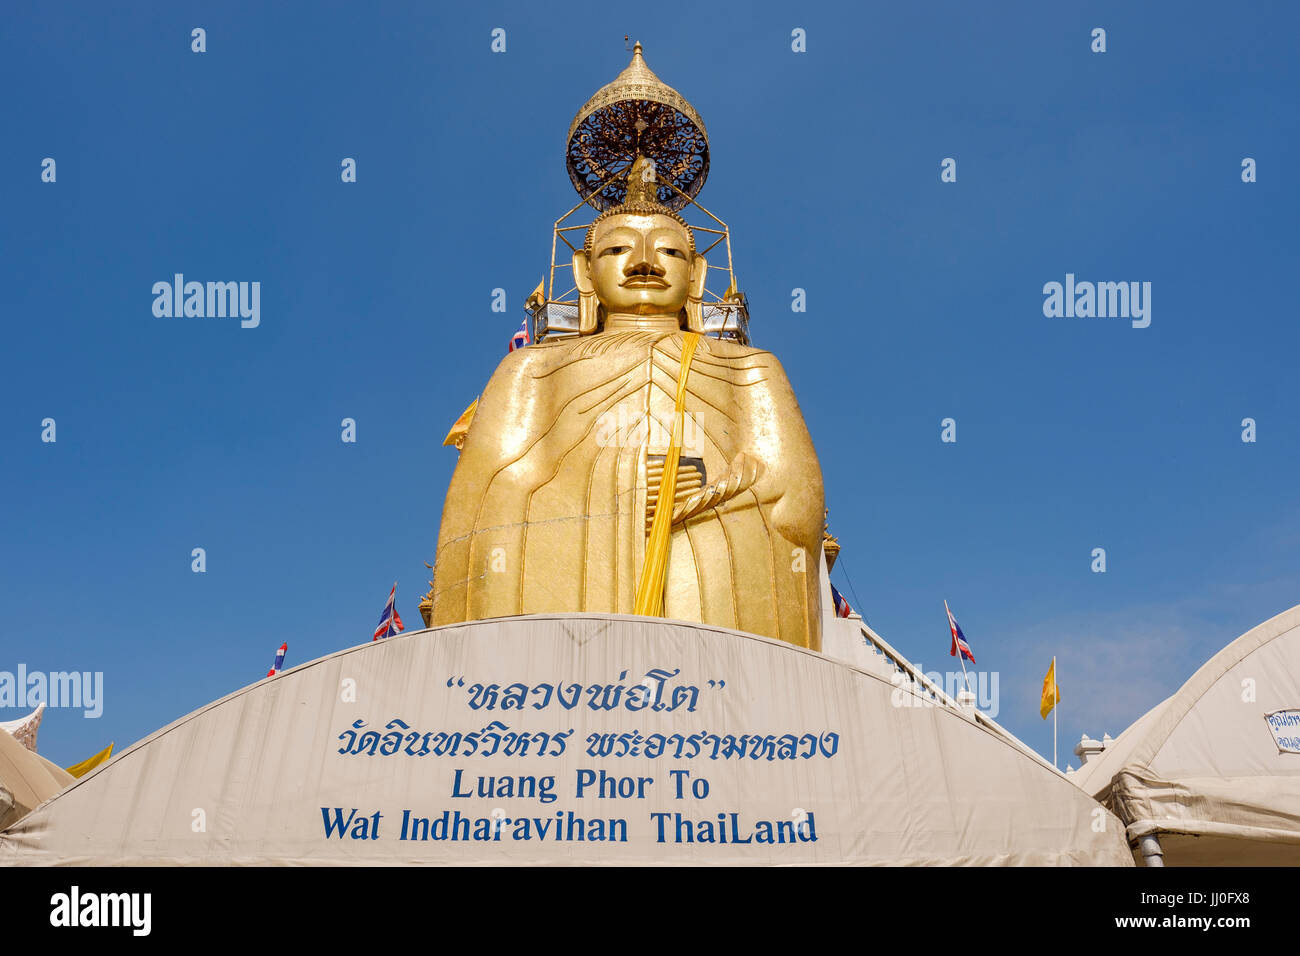 Les 32 mètres de haut standing Buddha statue (connu sous le nom de Luang Pho au Wat Intharawihan pour), un temple bouddhiste à Phra Nakohn District, Bangkok, Thaïlande. Banque D'Images